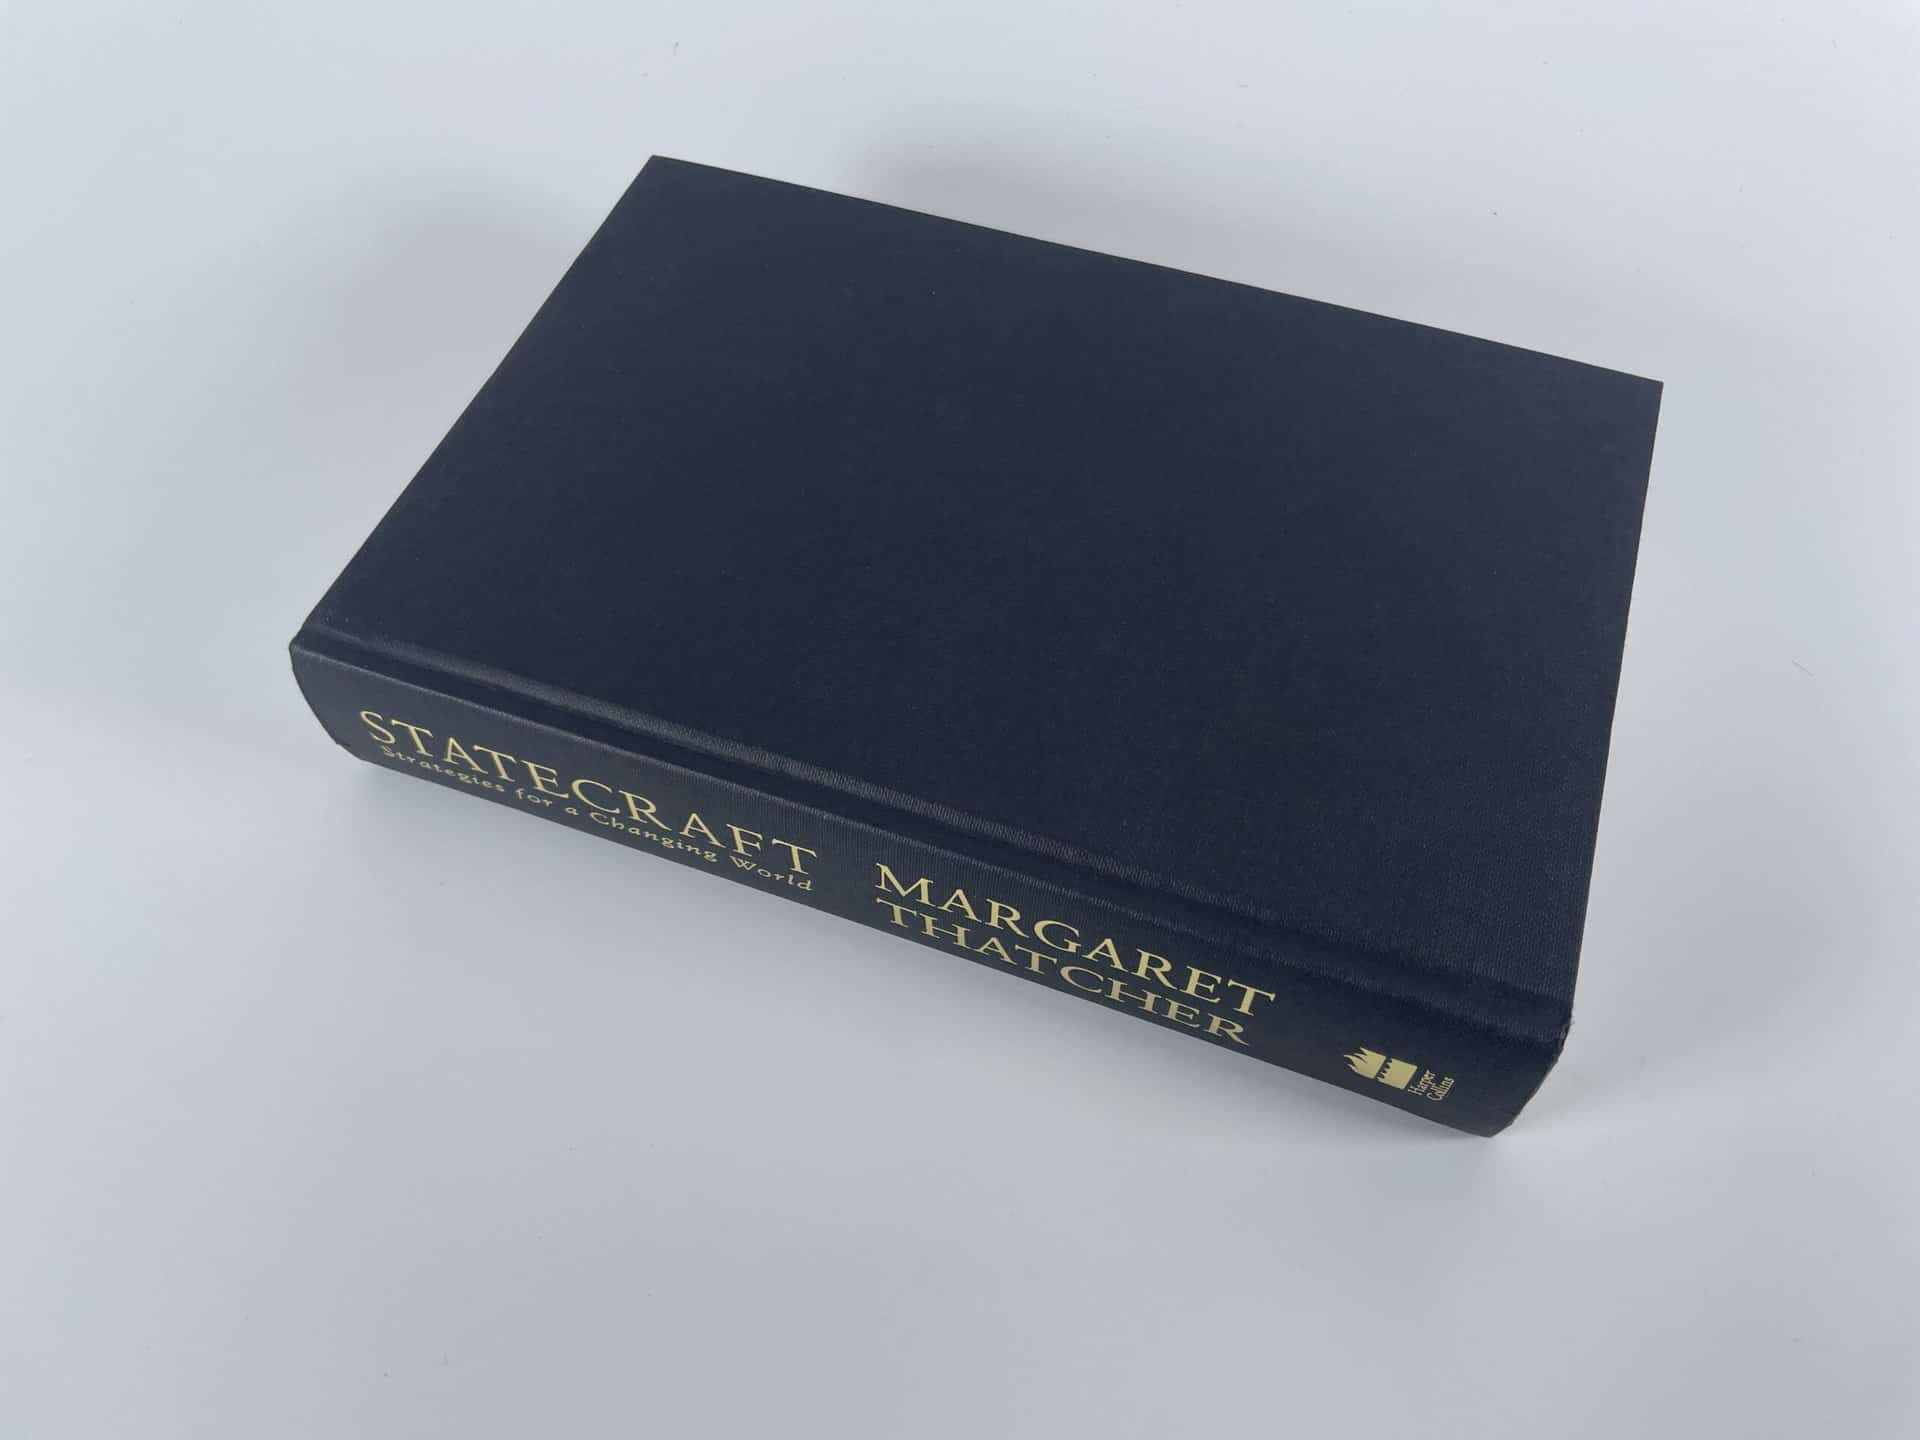 margaret thatcher statecraft first edition3